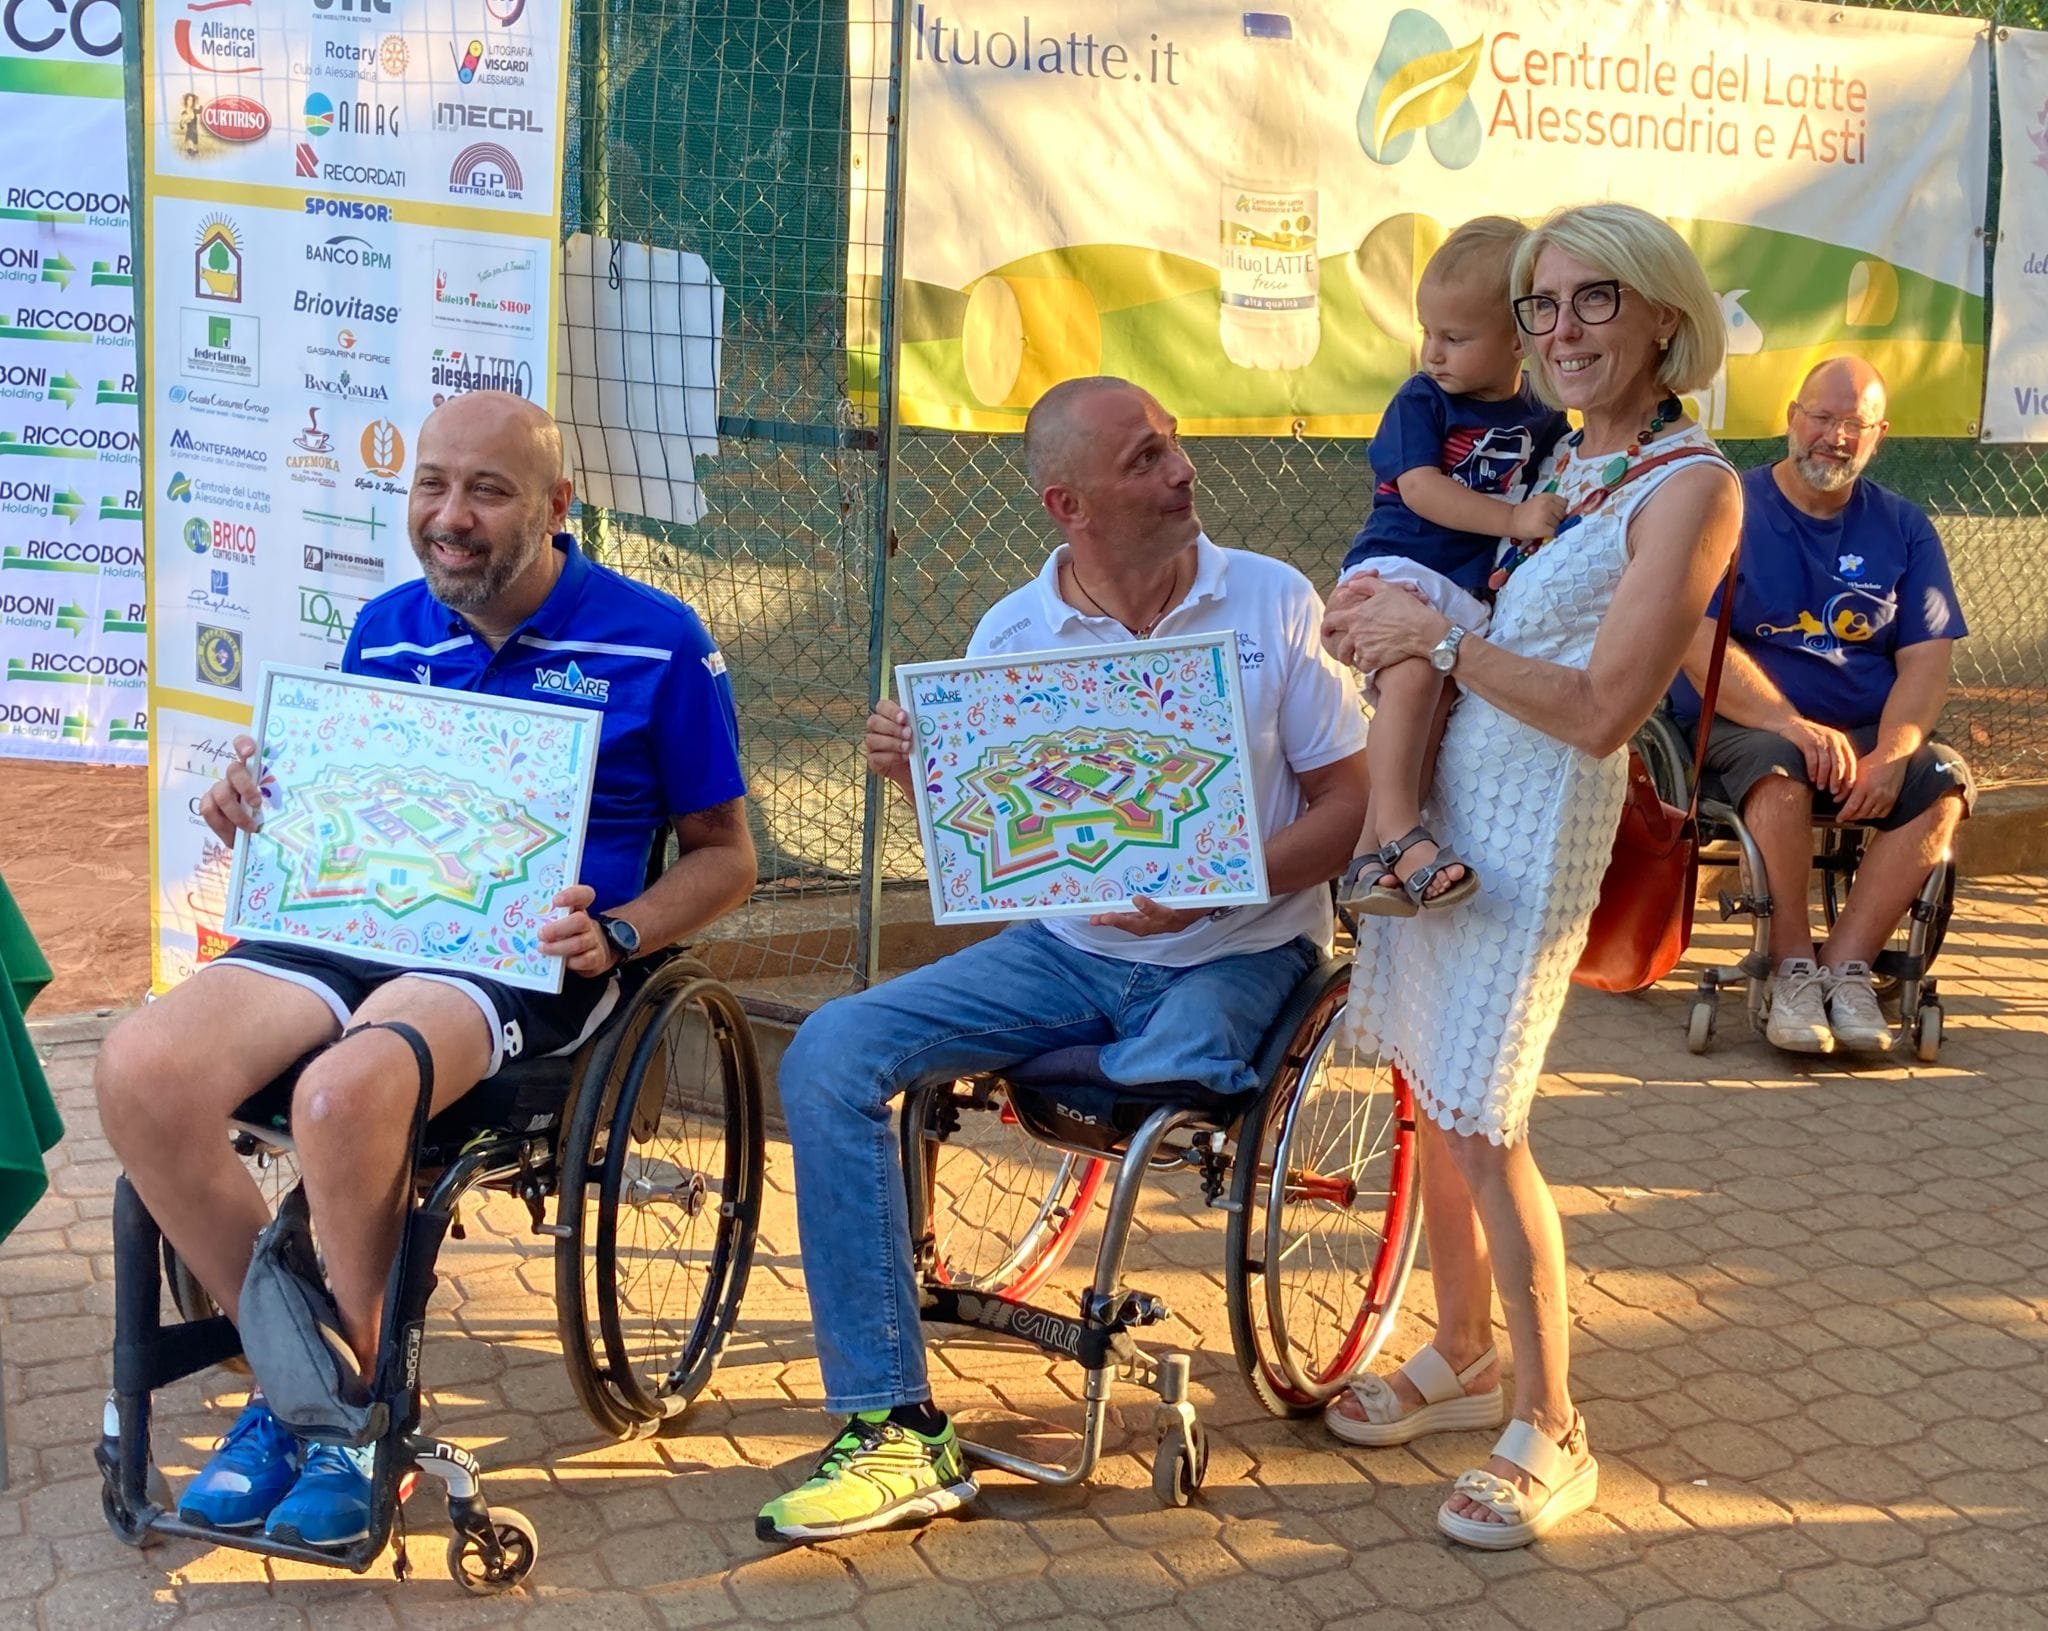 Tennis in Carrozzina: i vincitori e le foto del torneo nazionale ad Alessandria